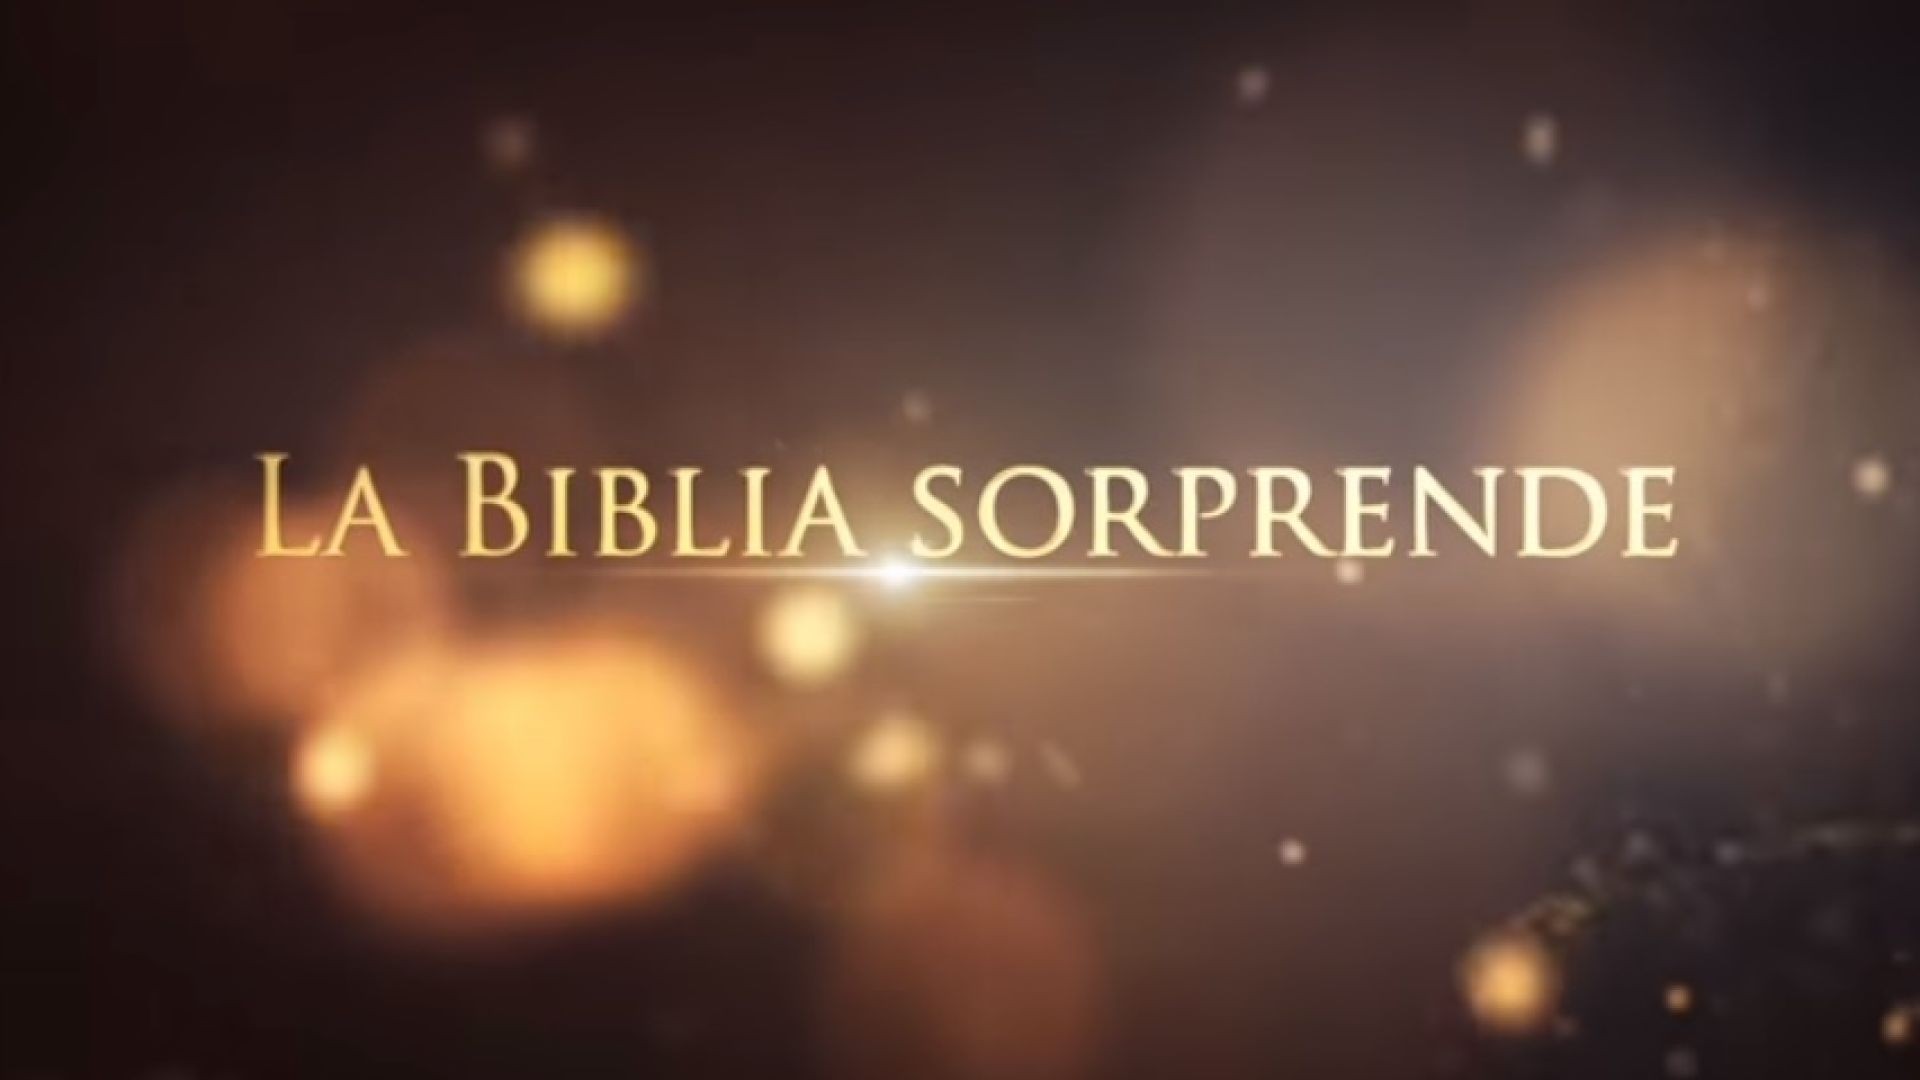 21 Los mediadores | La Biblia Sorprende 1ra temporada - Juan Surroca